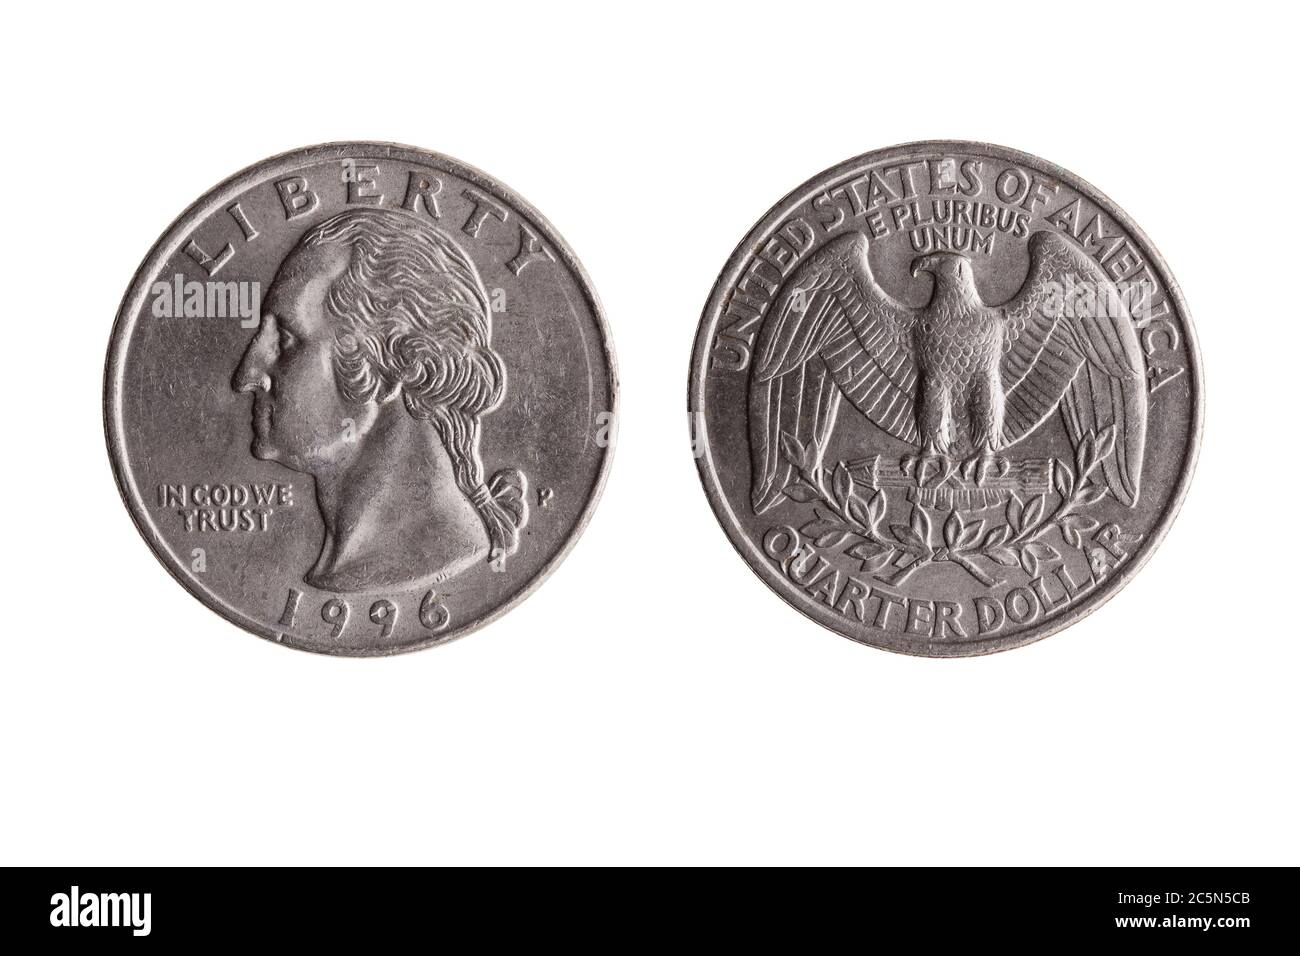 USA Viertel Dollar Nickel Münze (25 Cent) mit einem Portrait-Bild von George Washington Vorderseite und bald Eagle Rückseite ausgeschnitten und isoliert auf einer weißen BA Stockfoto